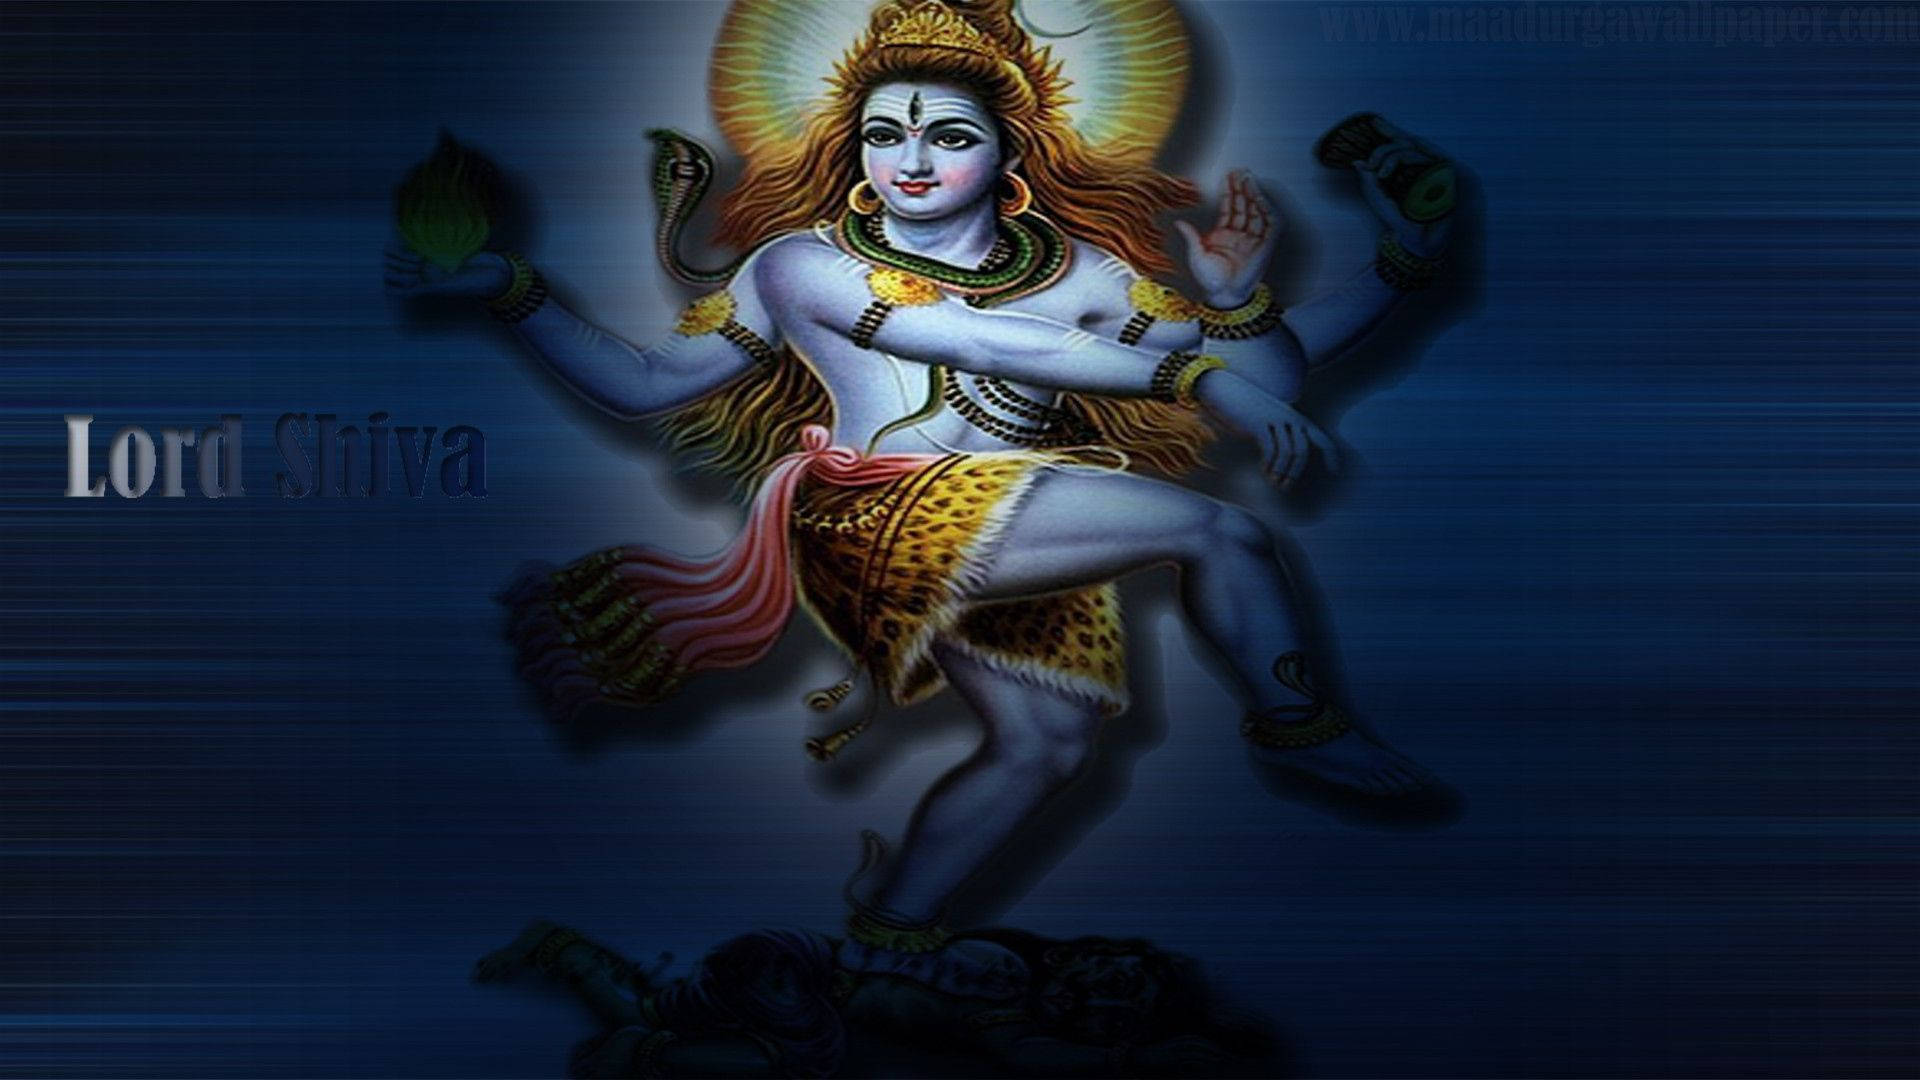 Dancing Lord Shiva Hd